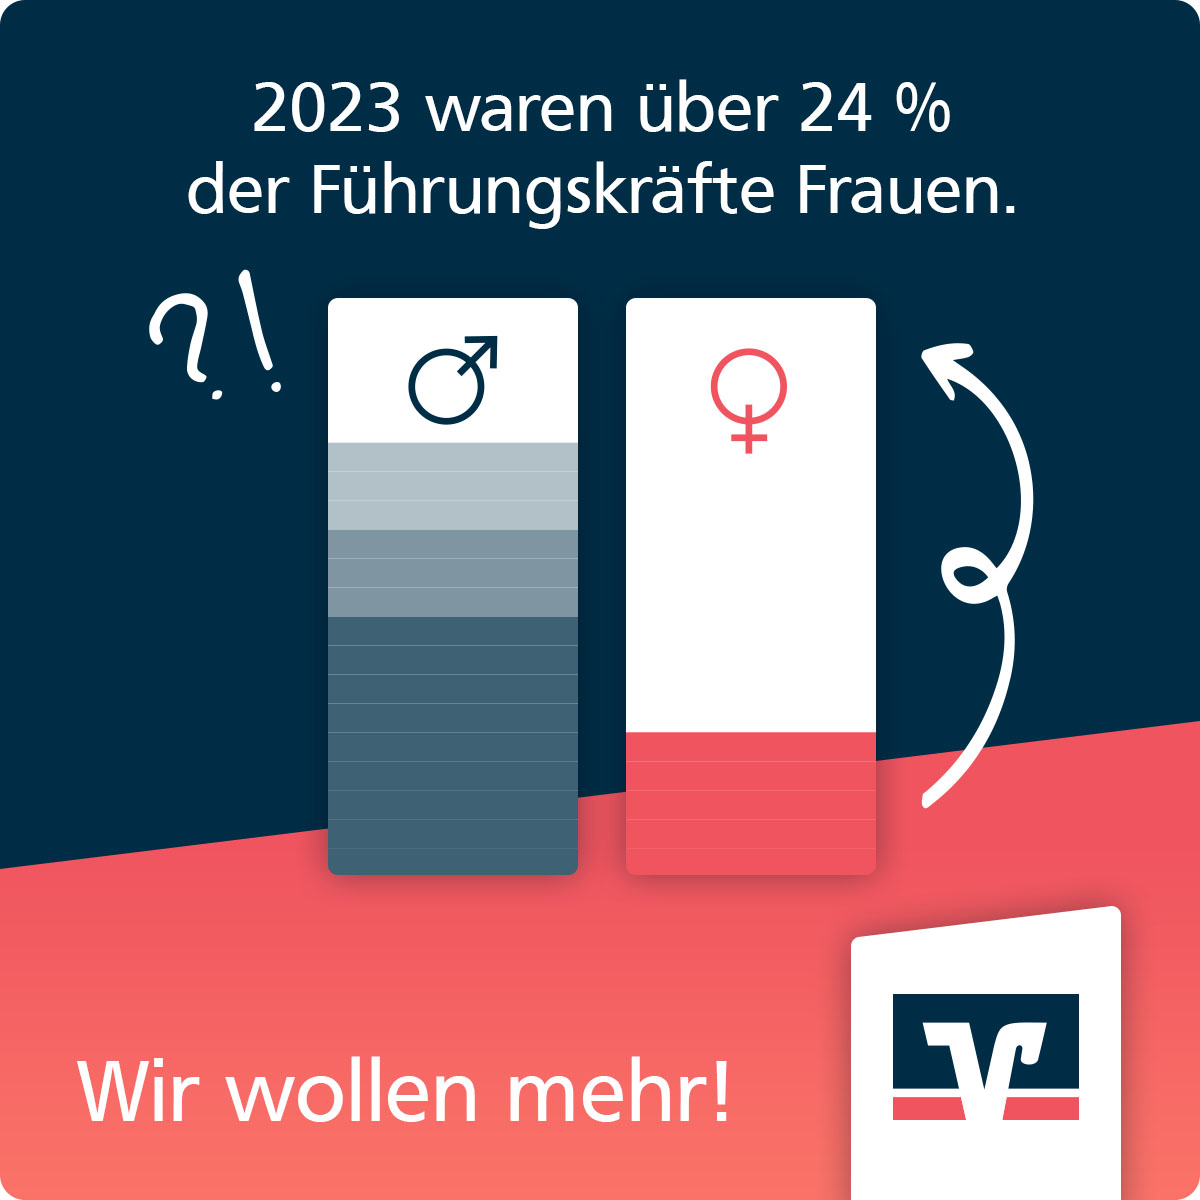 Zukunftsplanerin-Kachel "Führungskräfte": 2020 waren über 24% der Führungskräfte Frauen